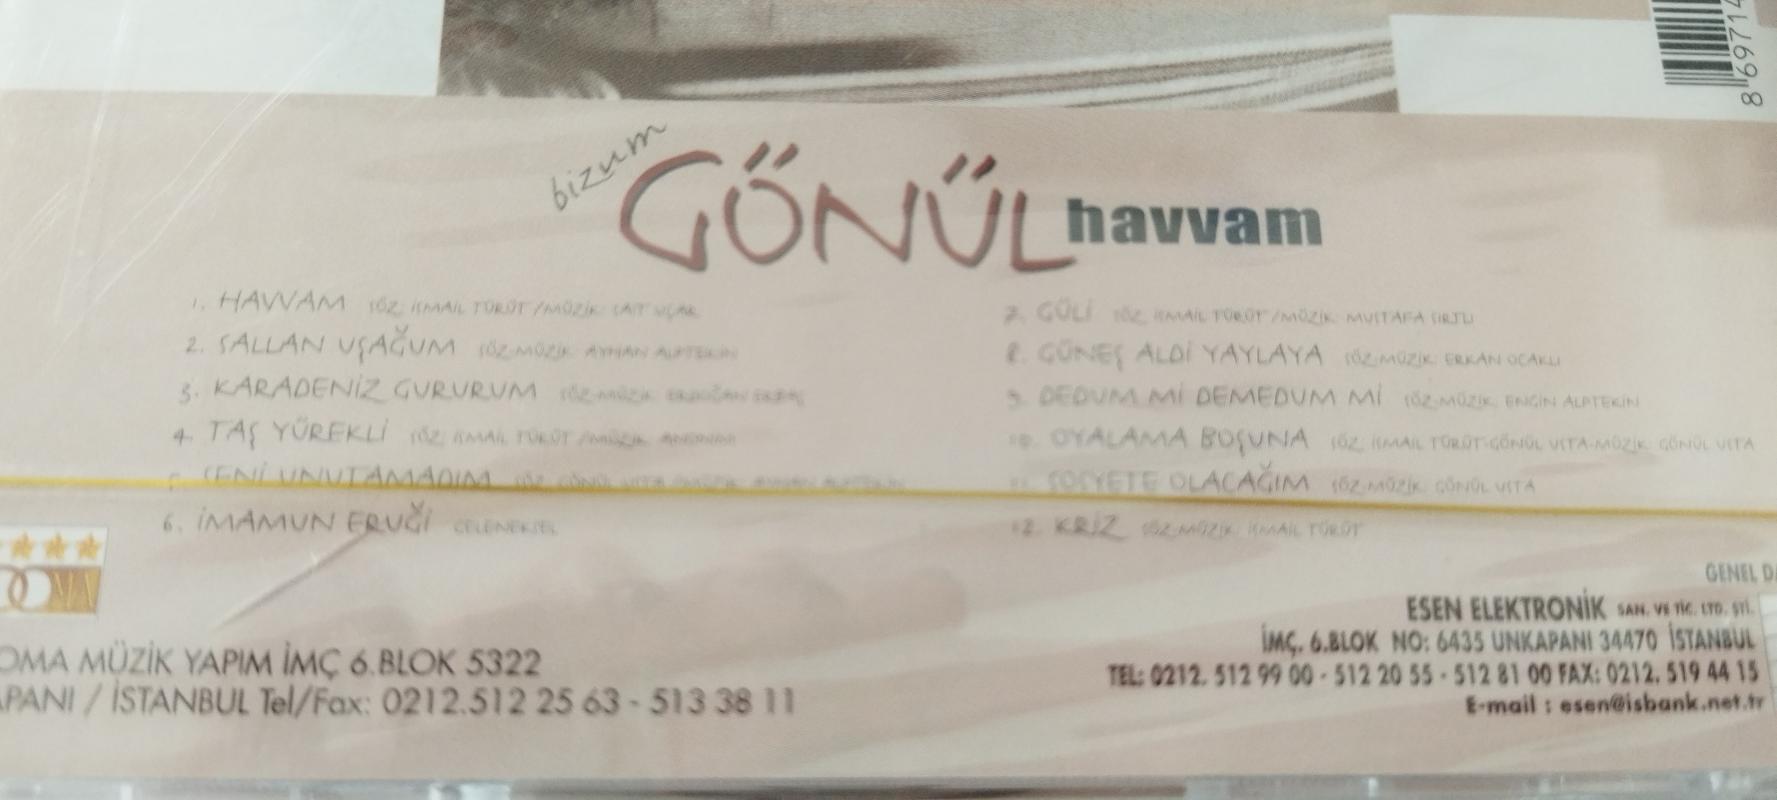 bizum Gönül Havvam  –    Türkiye Basım   CD  Albüm / Jelatinli